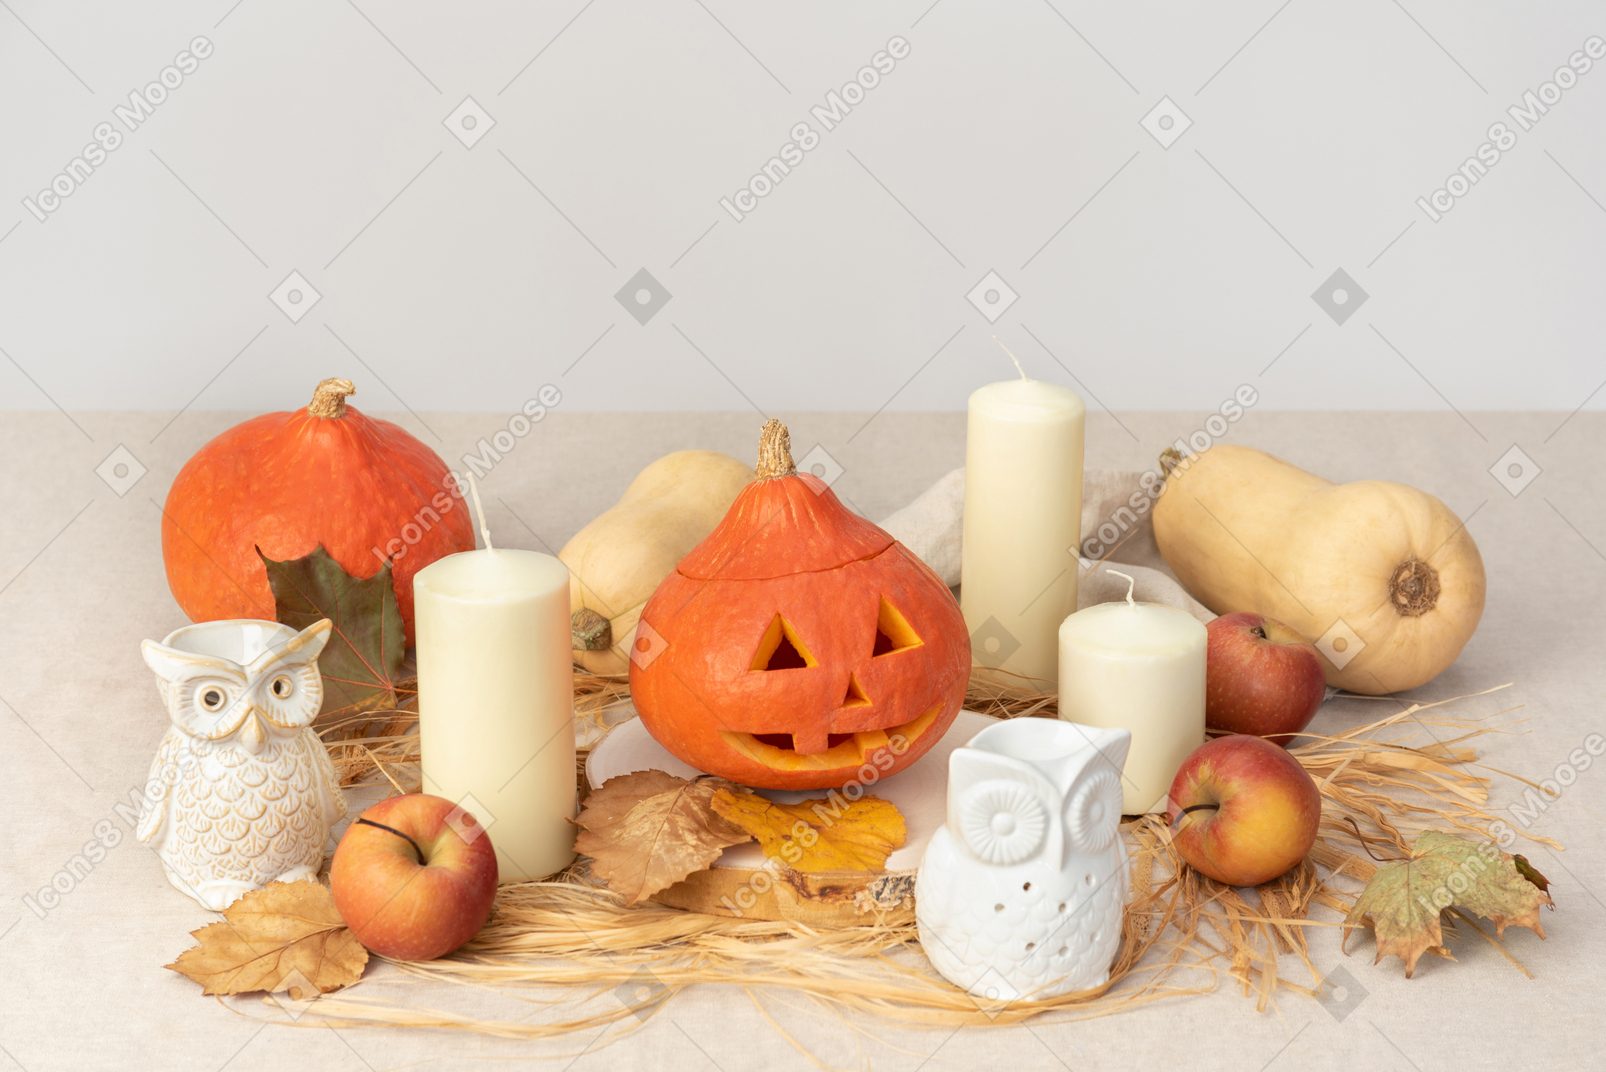 Abóboras esculpidas, figuras de corujas, velas e maçãs vermelhas